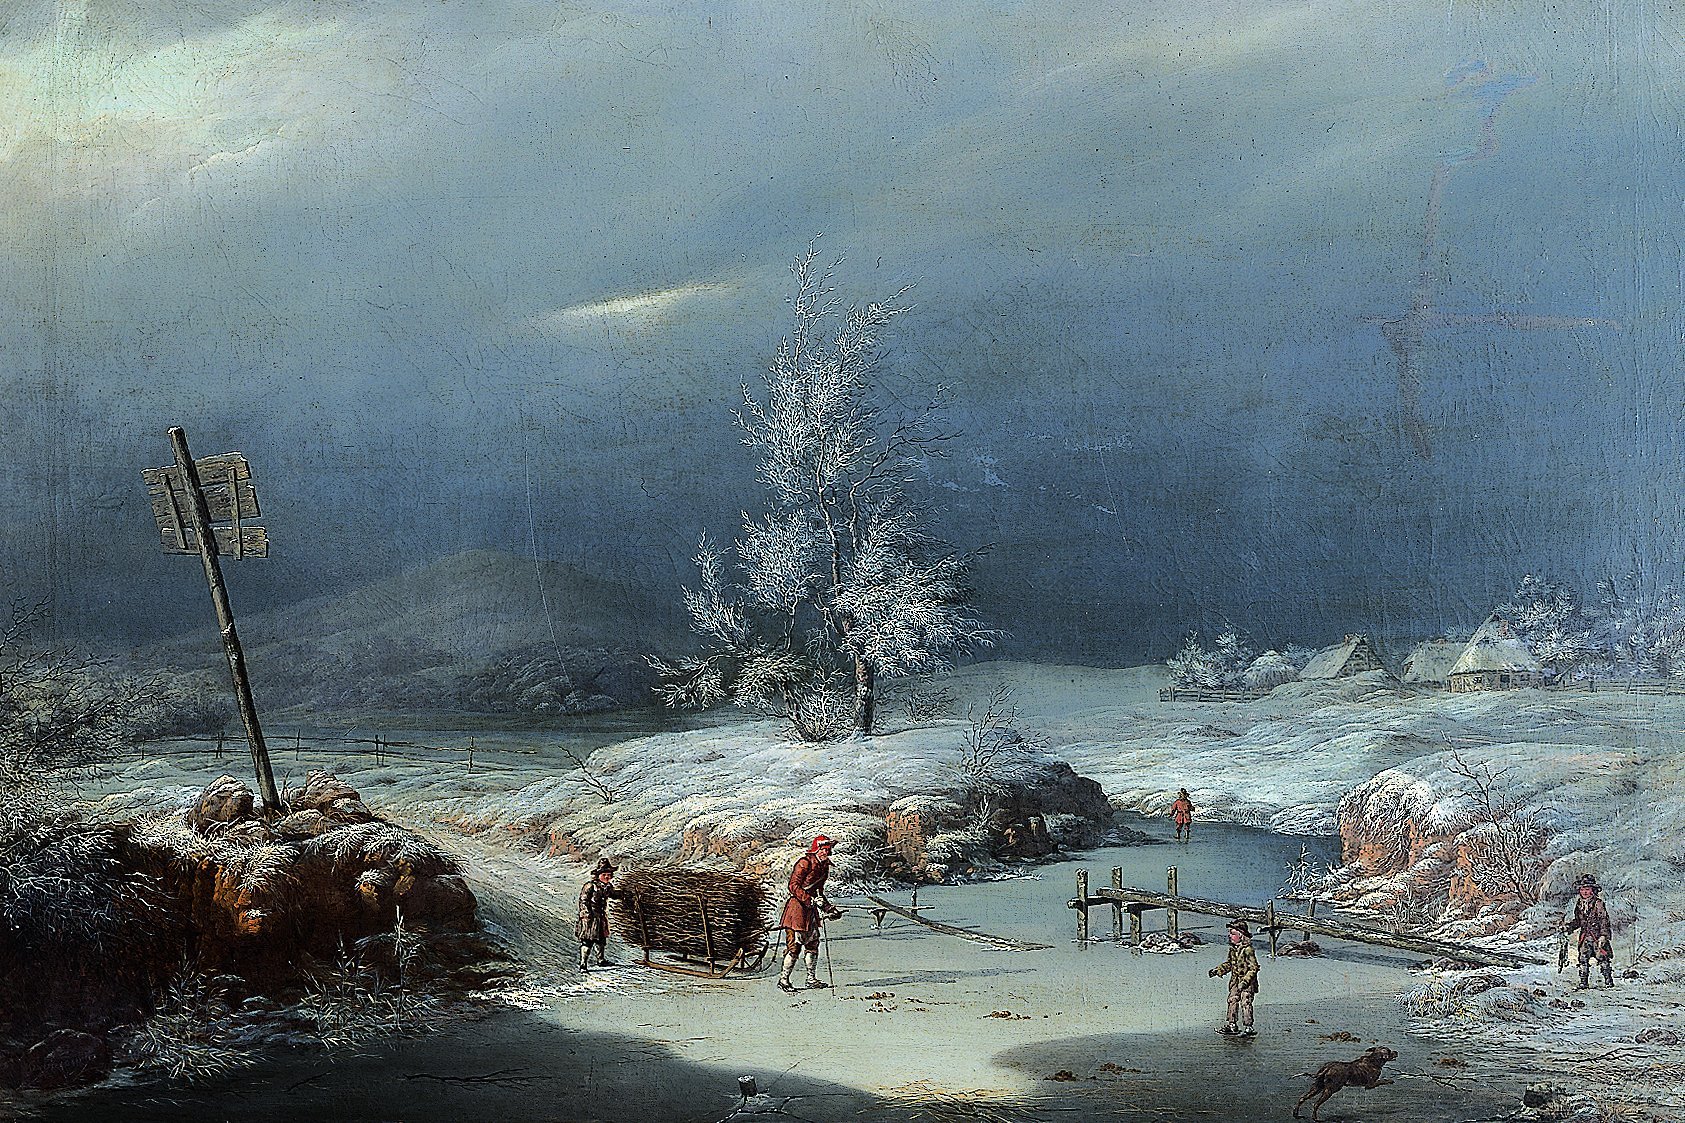 Gemälde mit winterlicher Landschaft mit Bäumen, einem zugefrohrenem See und Personen mit Schlitten im Vordergrund